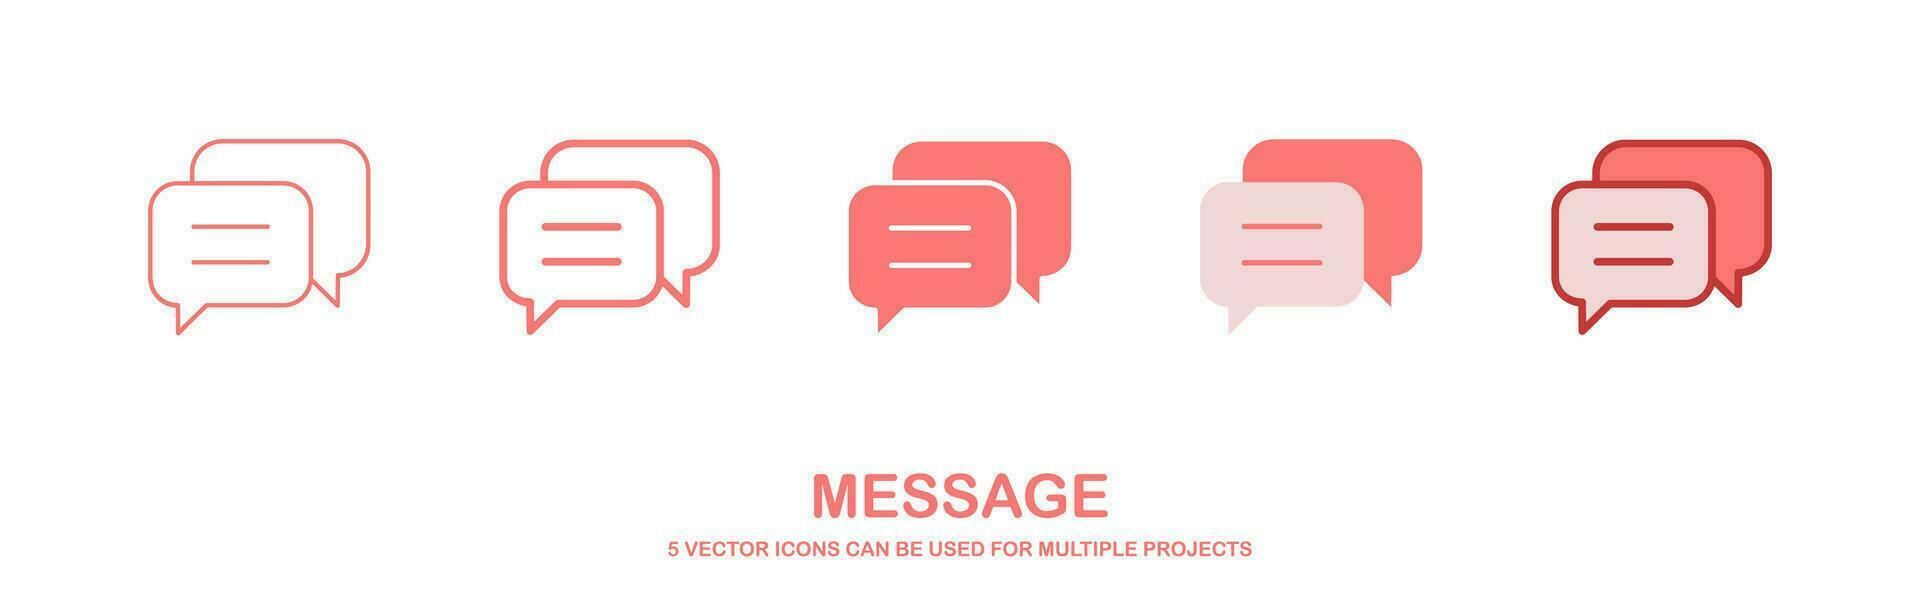 vektor chatt ikon samling platt design. meddelande vektor. textning symbol. vektor illustration.